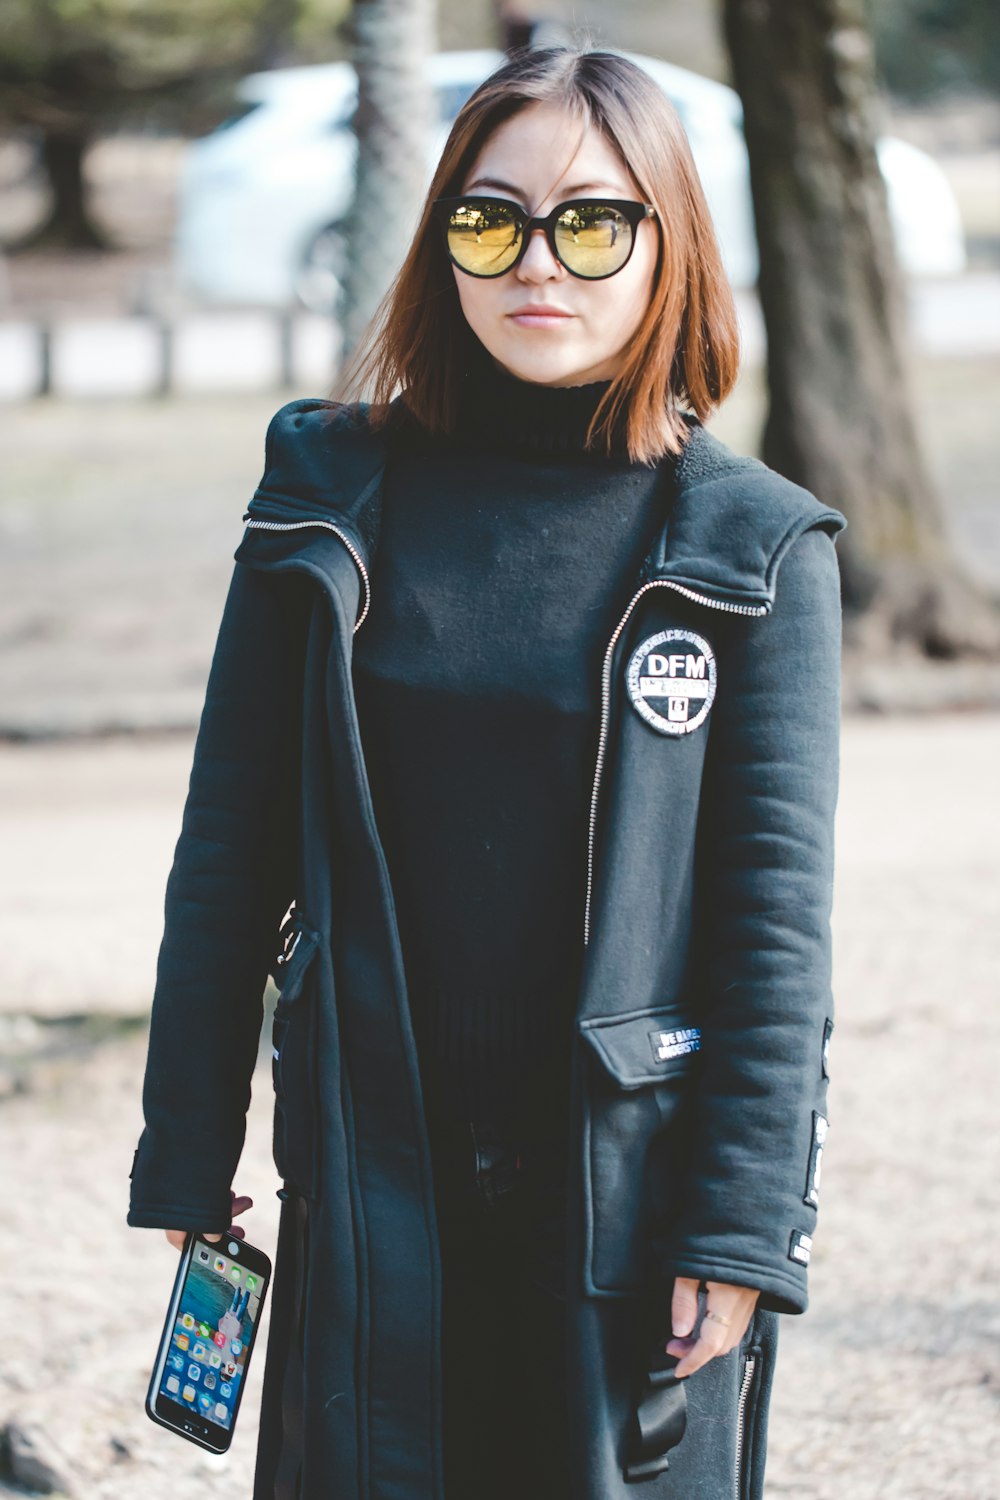 mujer con gafas de sol sosteniendo un teléfono inteligente Android negro